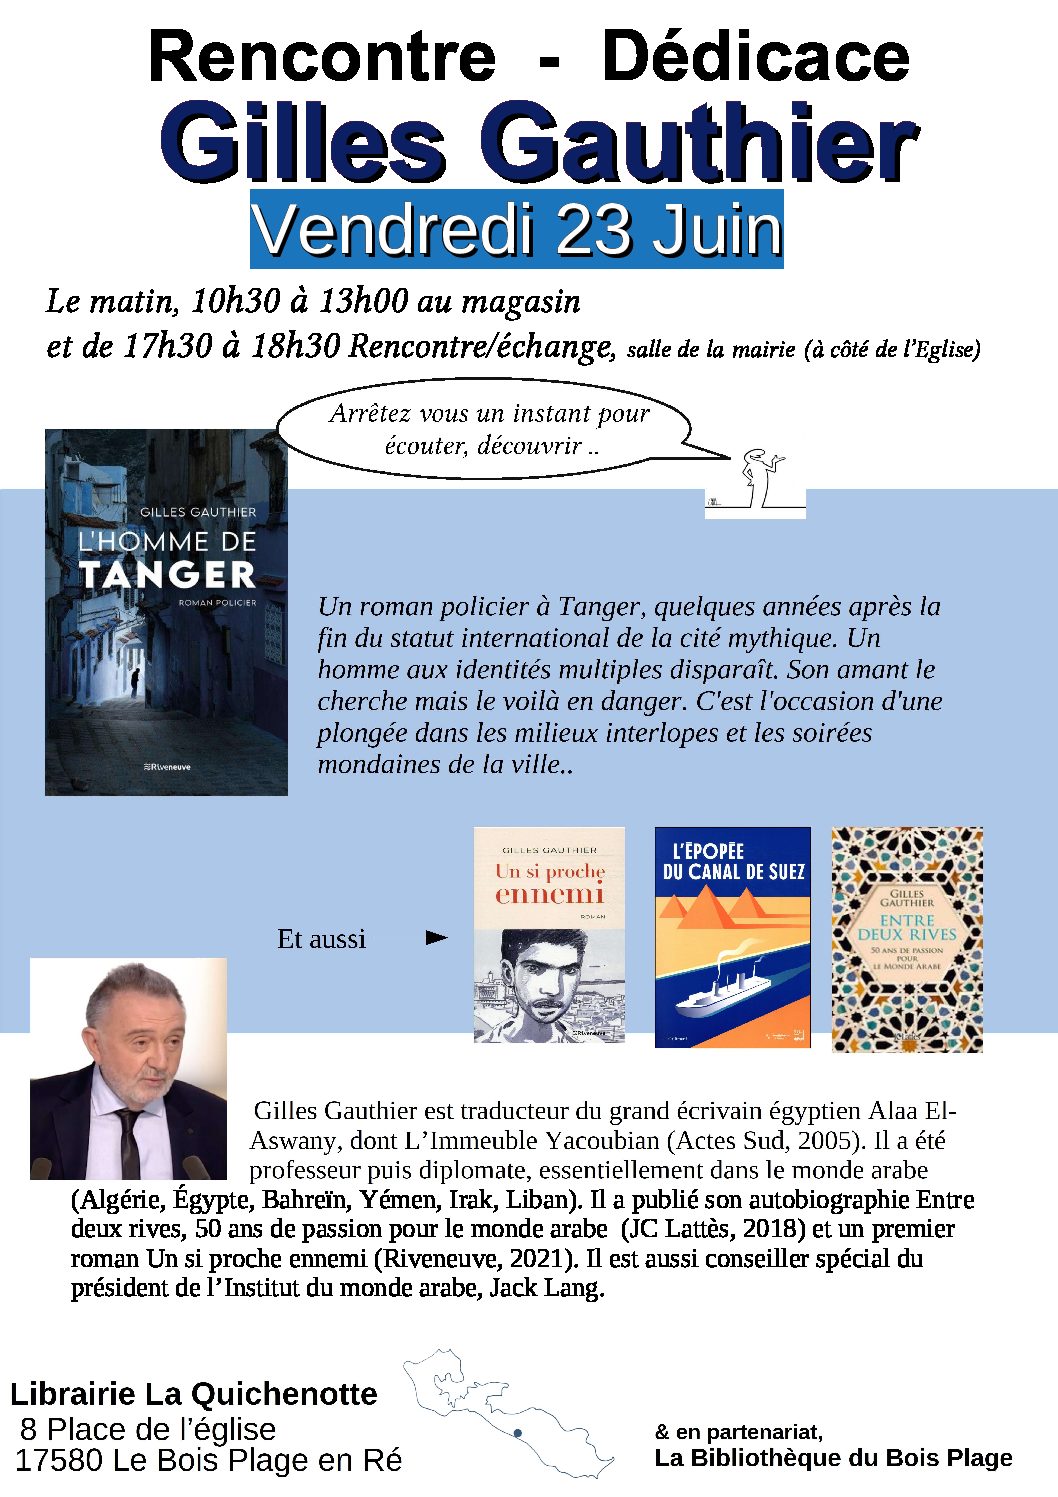 Rencontre et dédicaces avec Gilles Gauthier à La Quichenotte